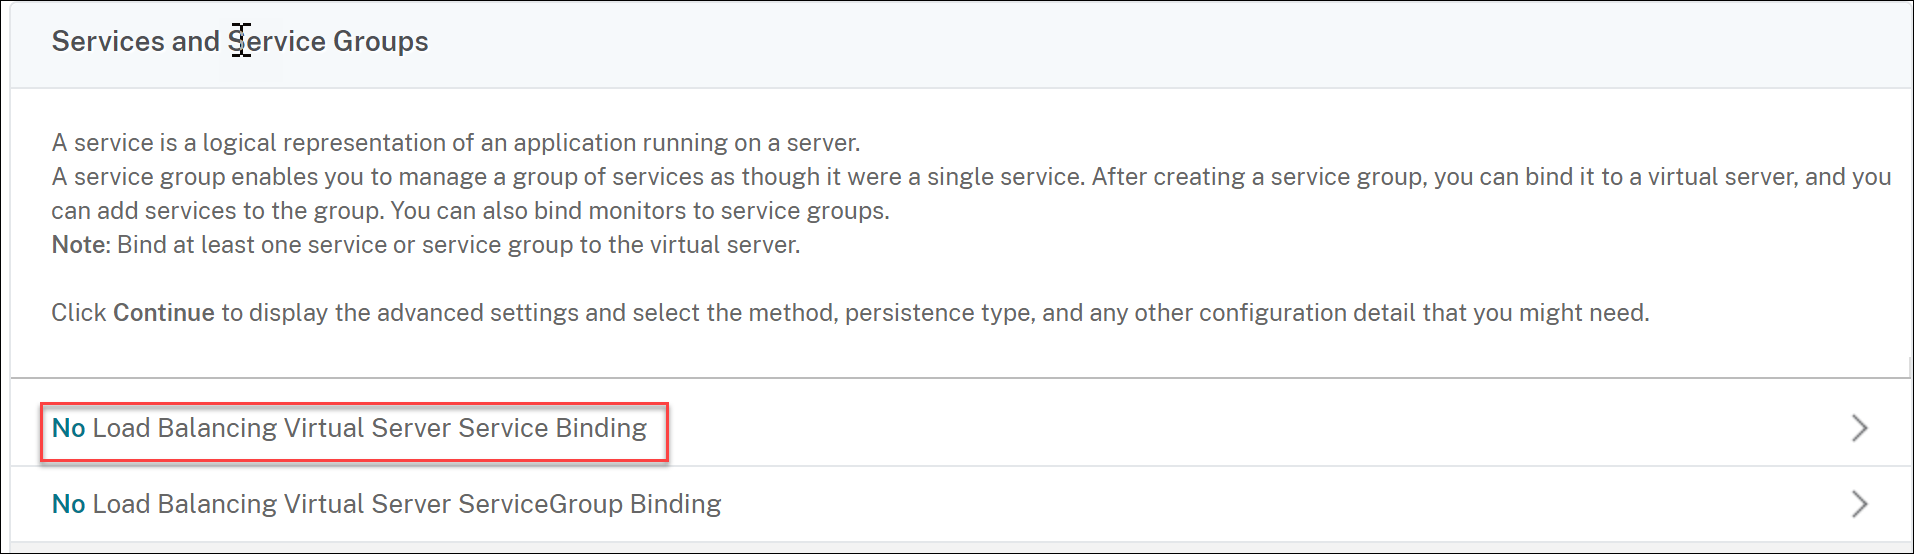 No load balancing virtual server service binding